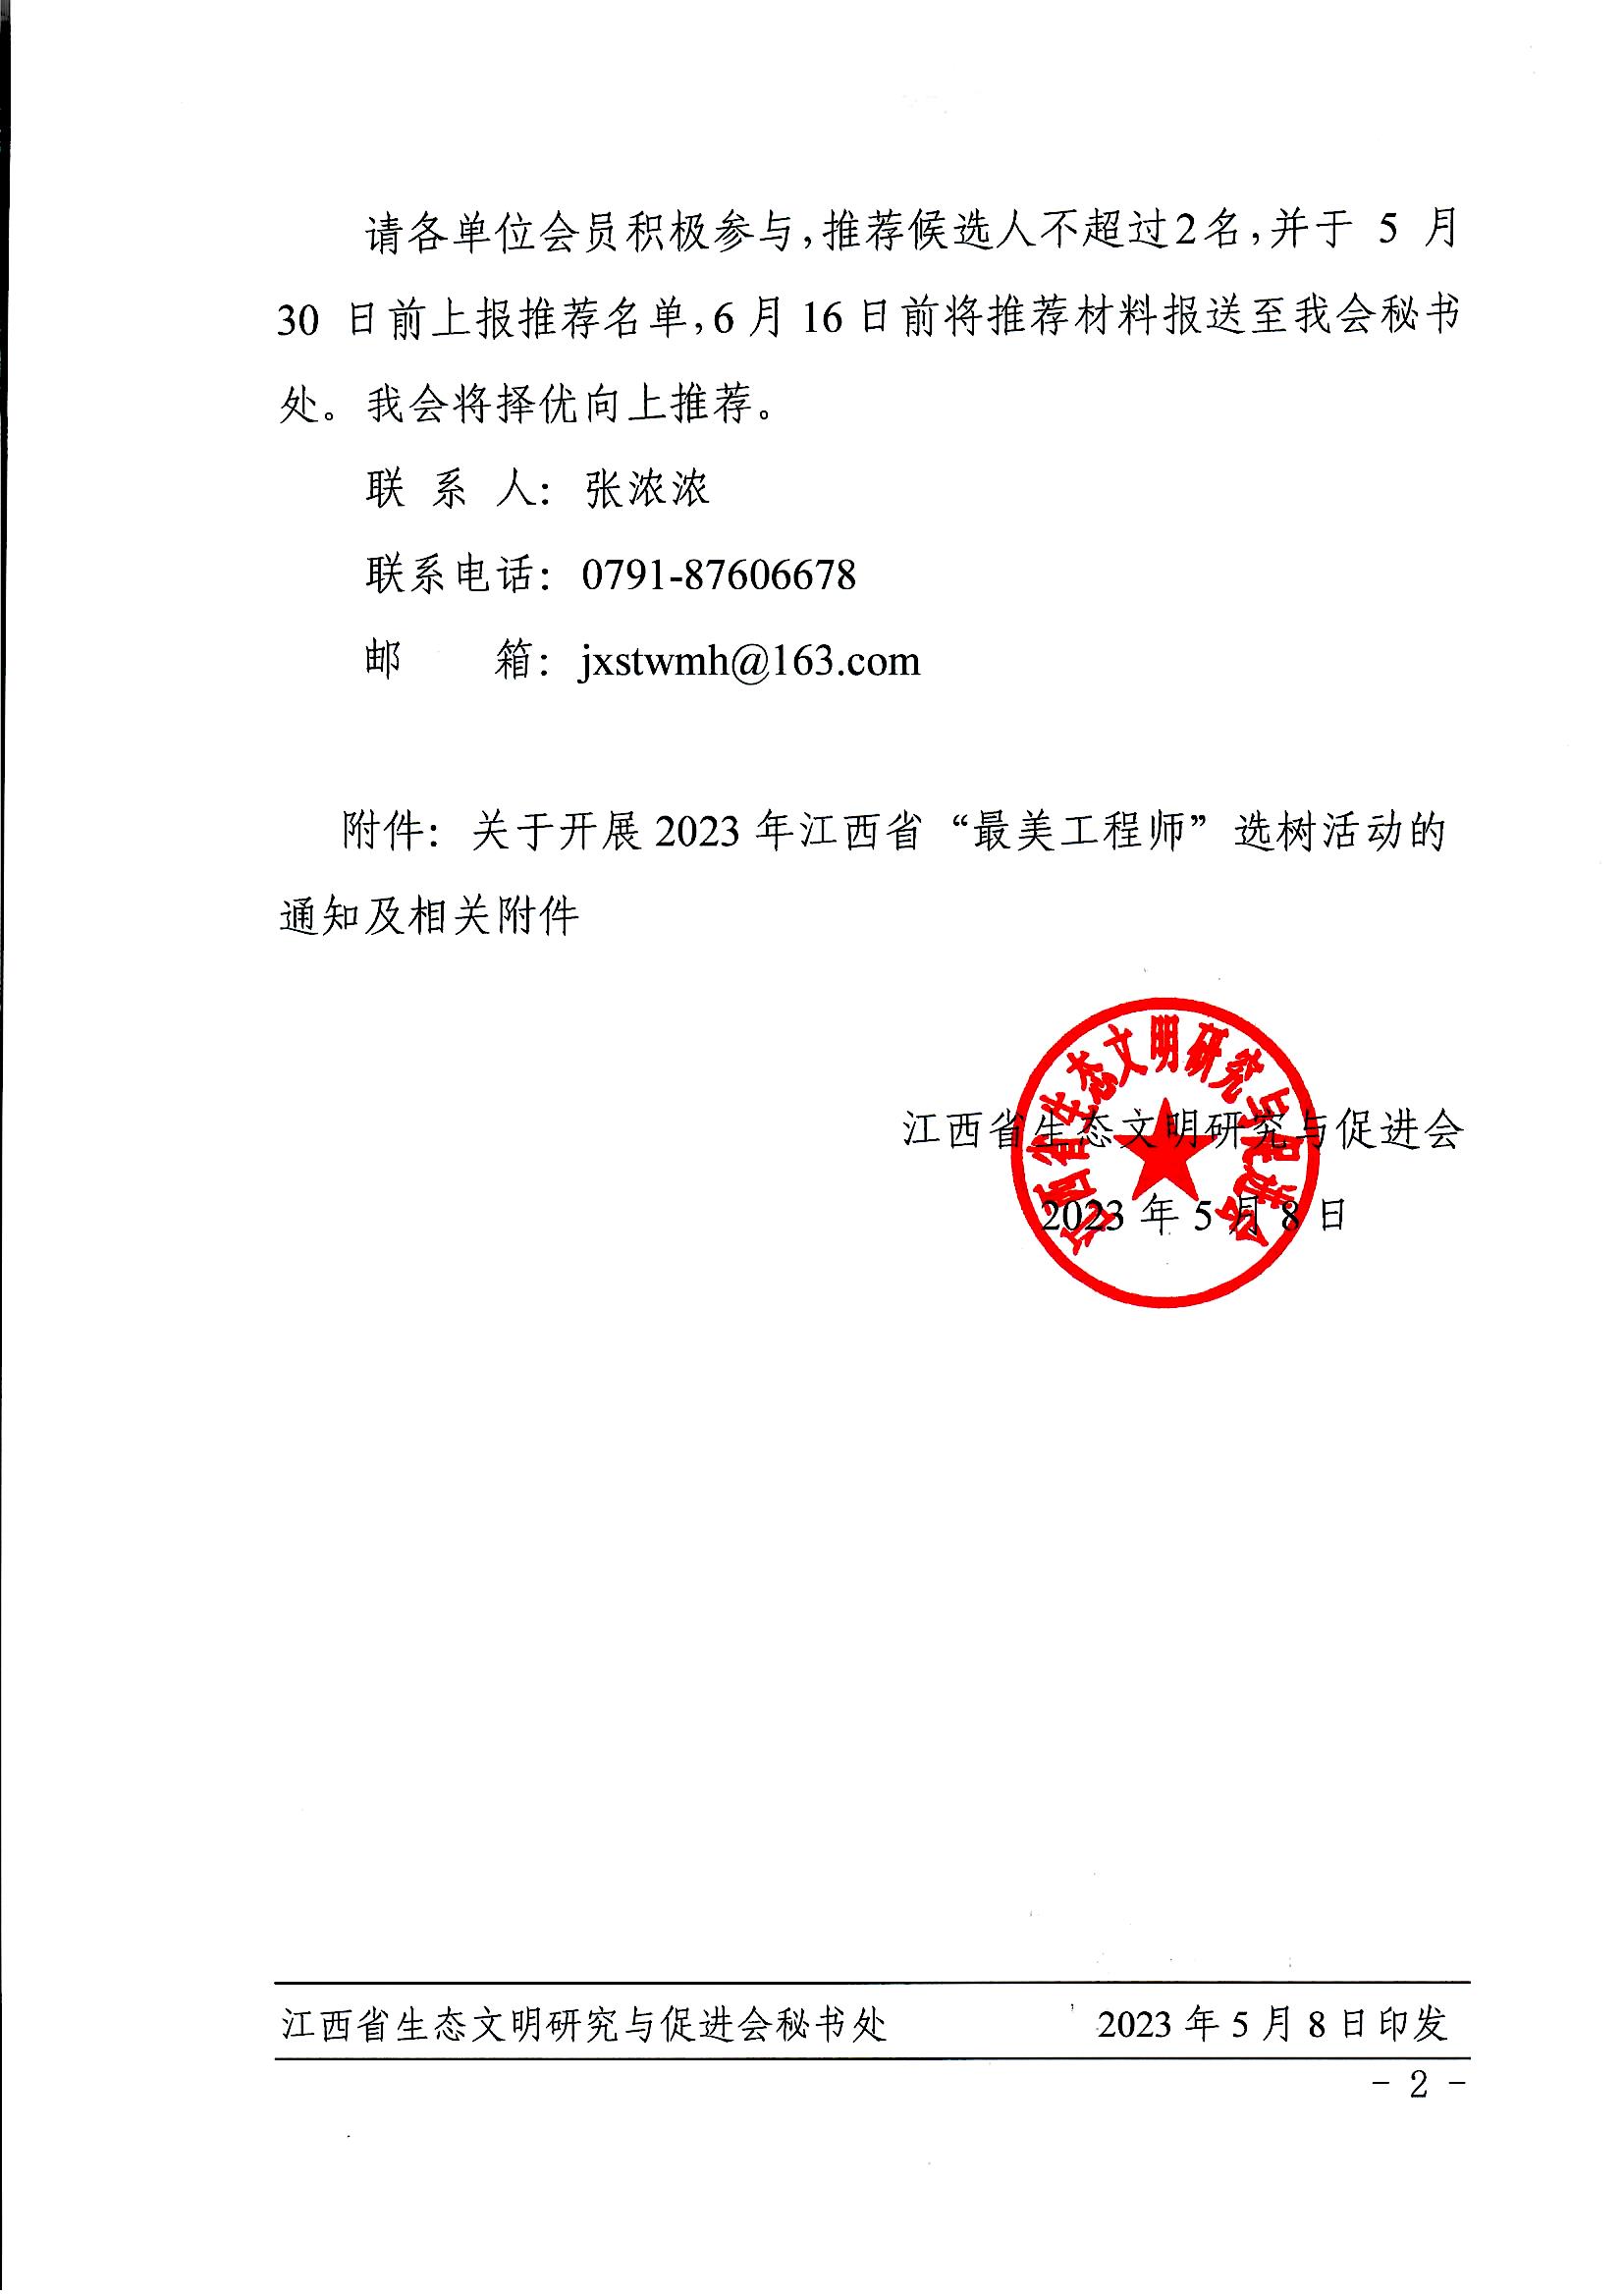 转发关于开展2023年江西省“最美工程师”选树活动的通知_页面_2.jpg